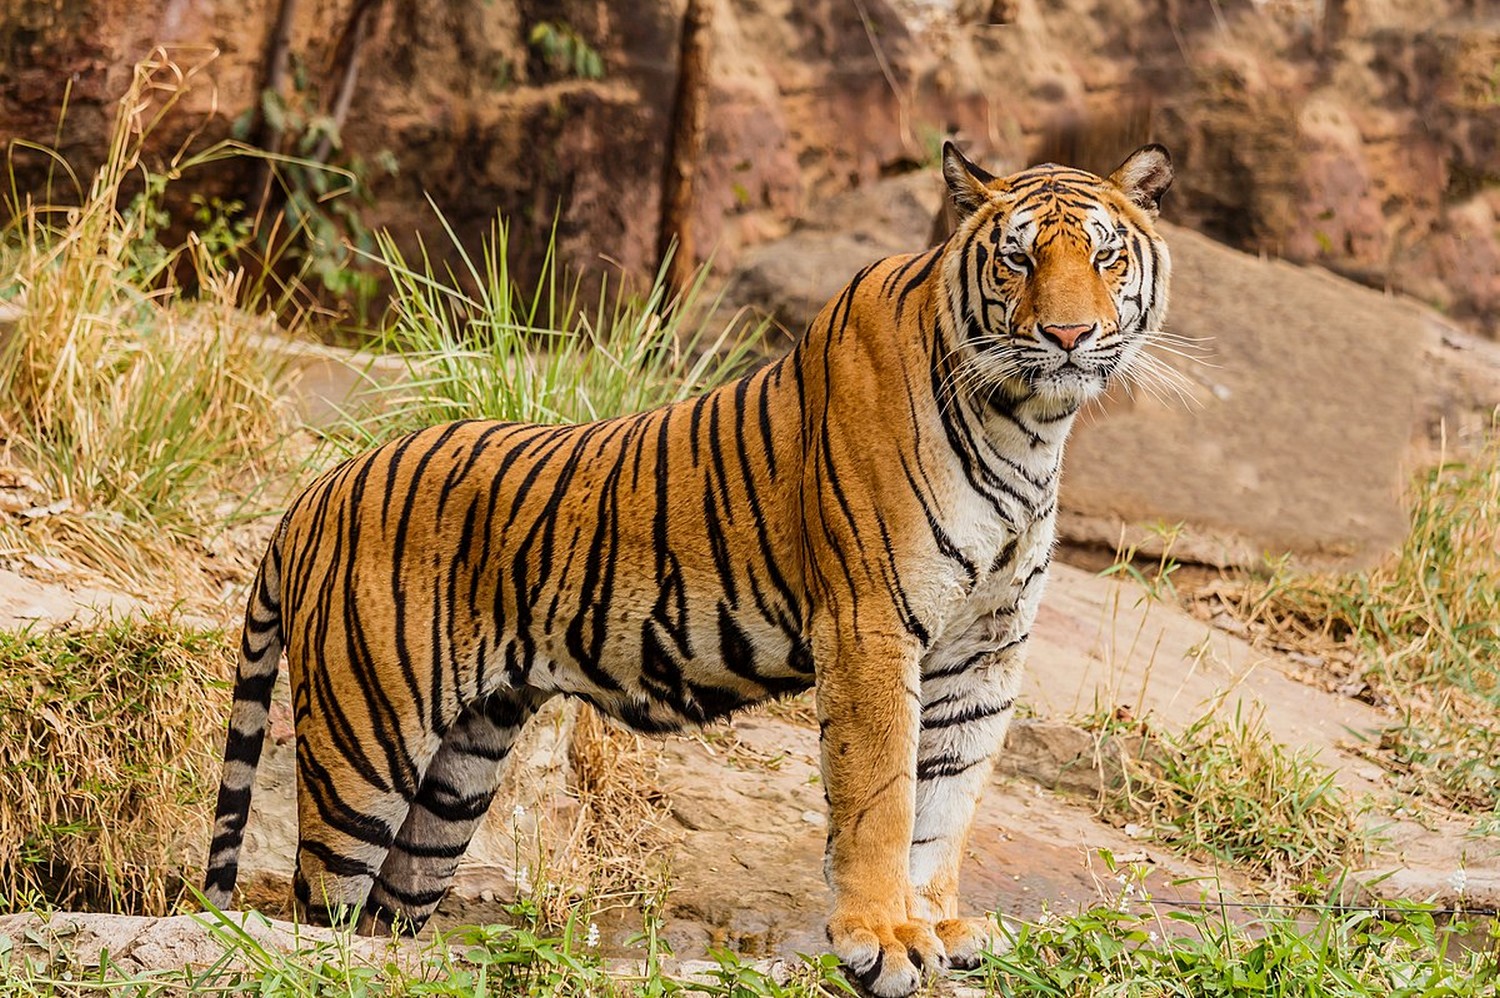 White Tiger Animal Facts  Panthera tigris tigris - A-Z Animals